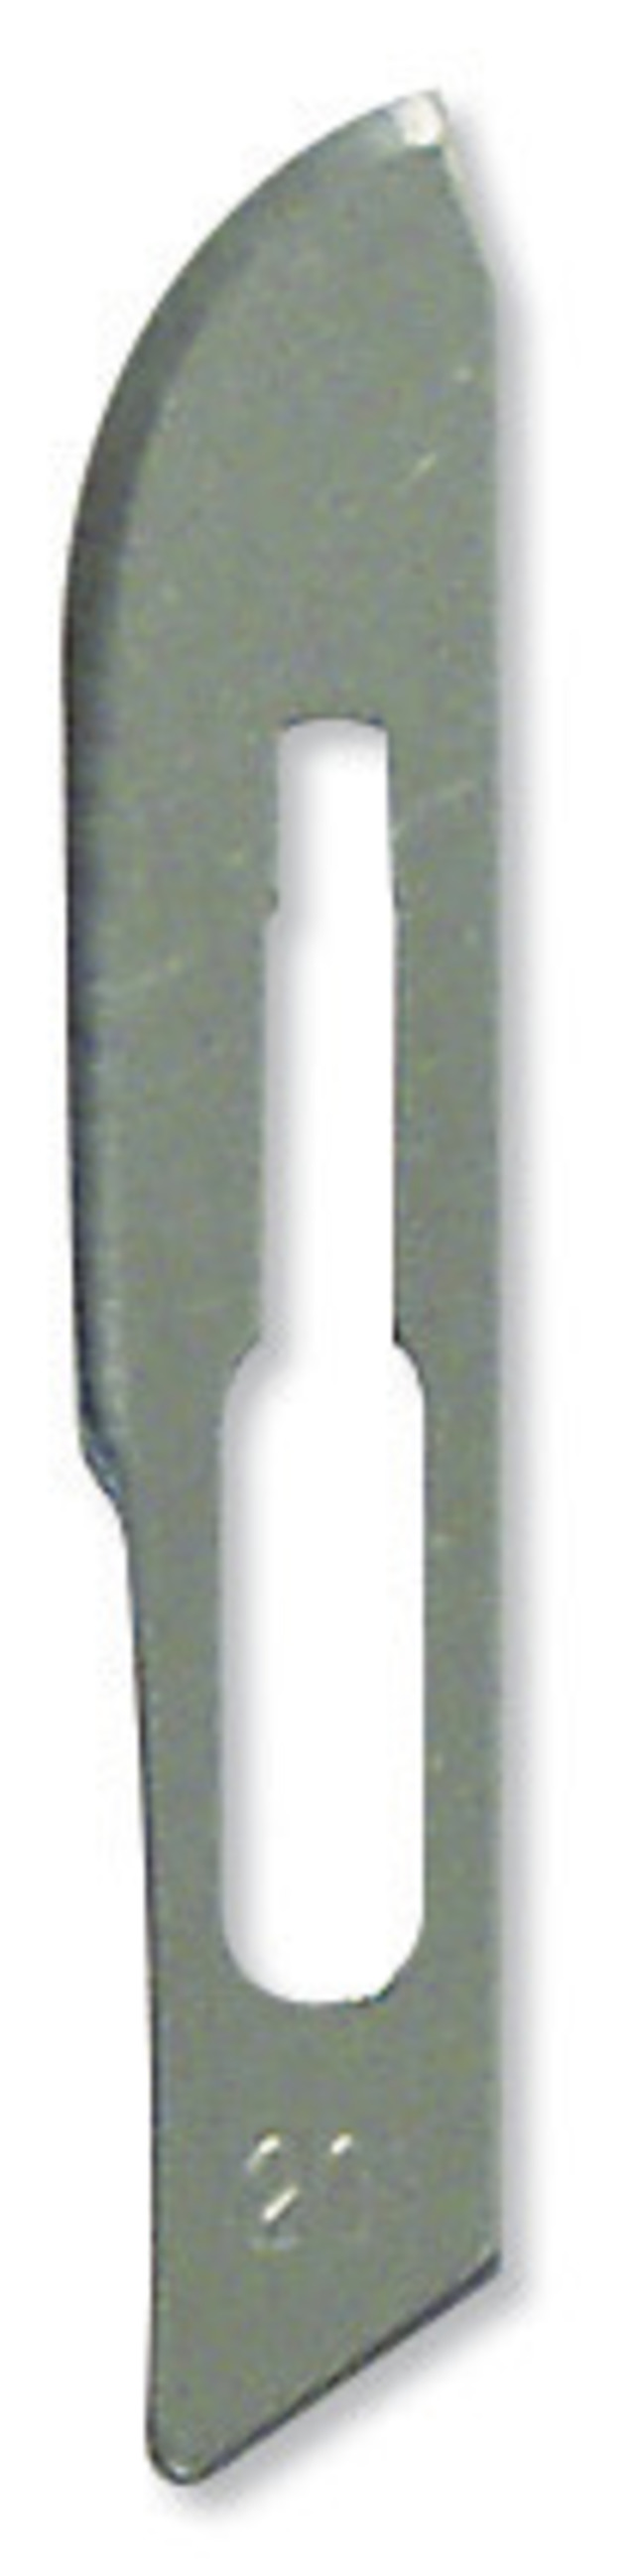 DR Instruments Scalpel Blades, Number 20, Pack of 10, Item Number 573201